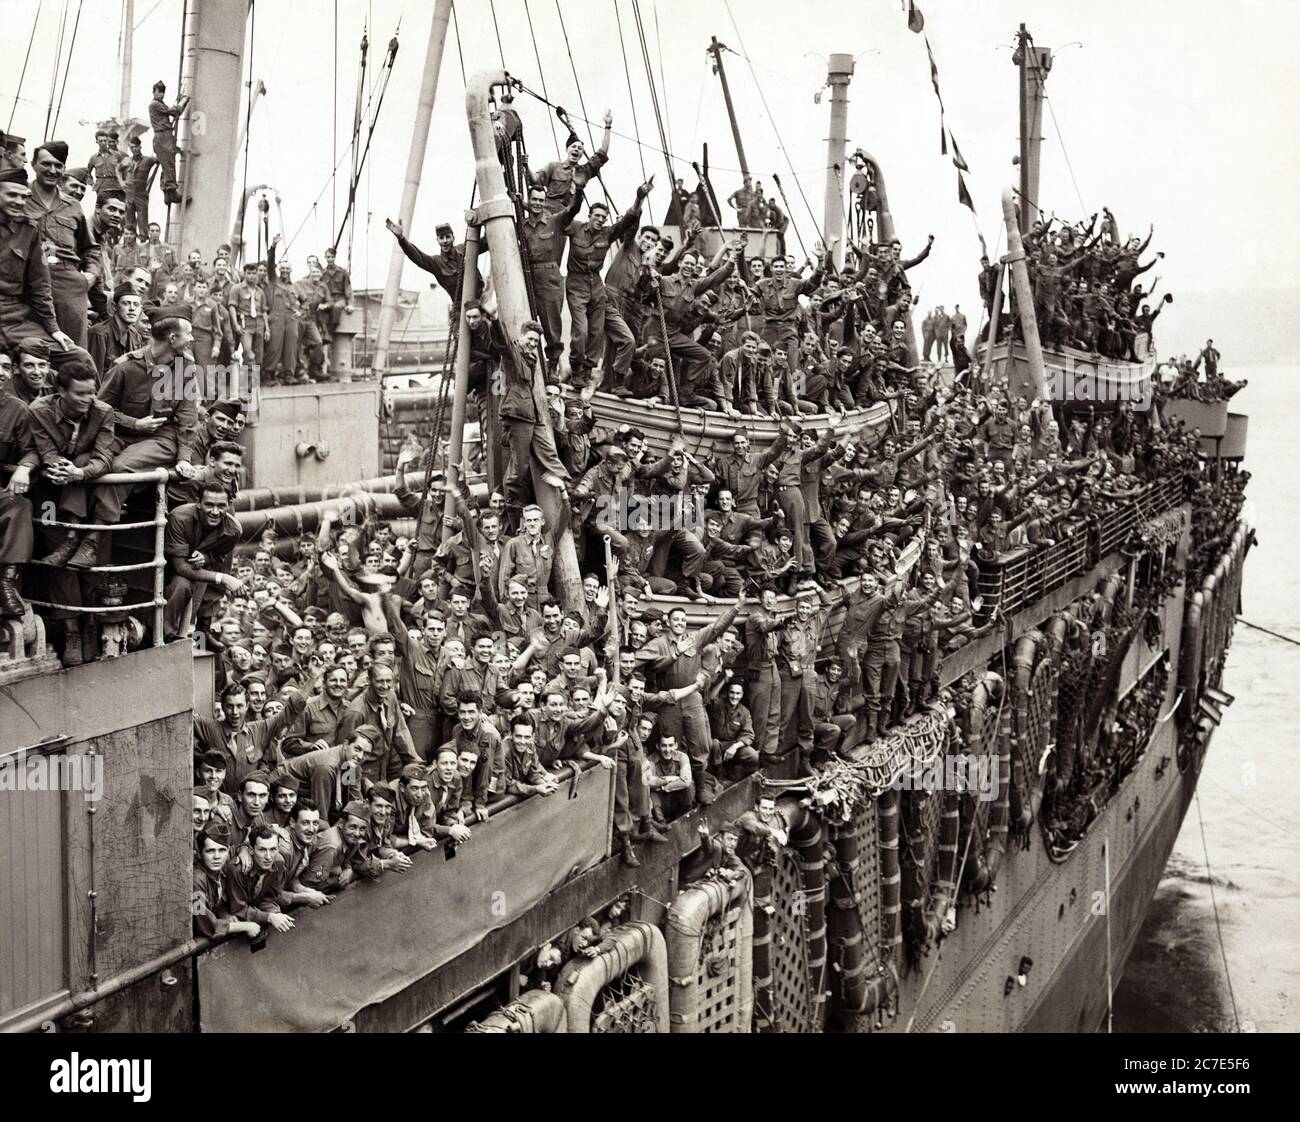 Les soldats américains de la 20e division blindée et des unités de la 9e armée célèbrent sur le SS John Ericsson lorsqu'ils rentrent à la maison, Pier 87, North (Hudson) River, New York City, New York, Etats-Unis, photo d'Al Ravenna, World Telegram & Sun, 6 août 1945 Banque D'Images